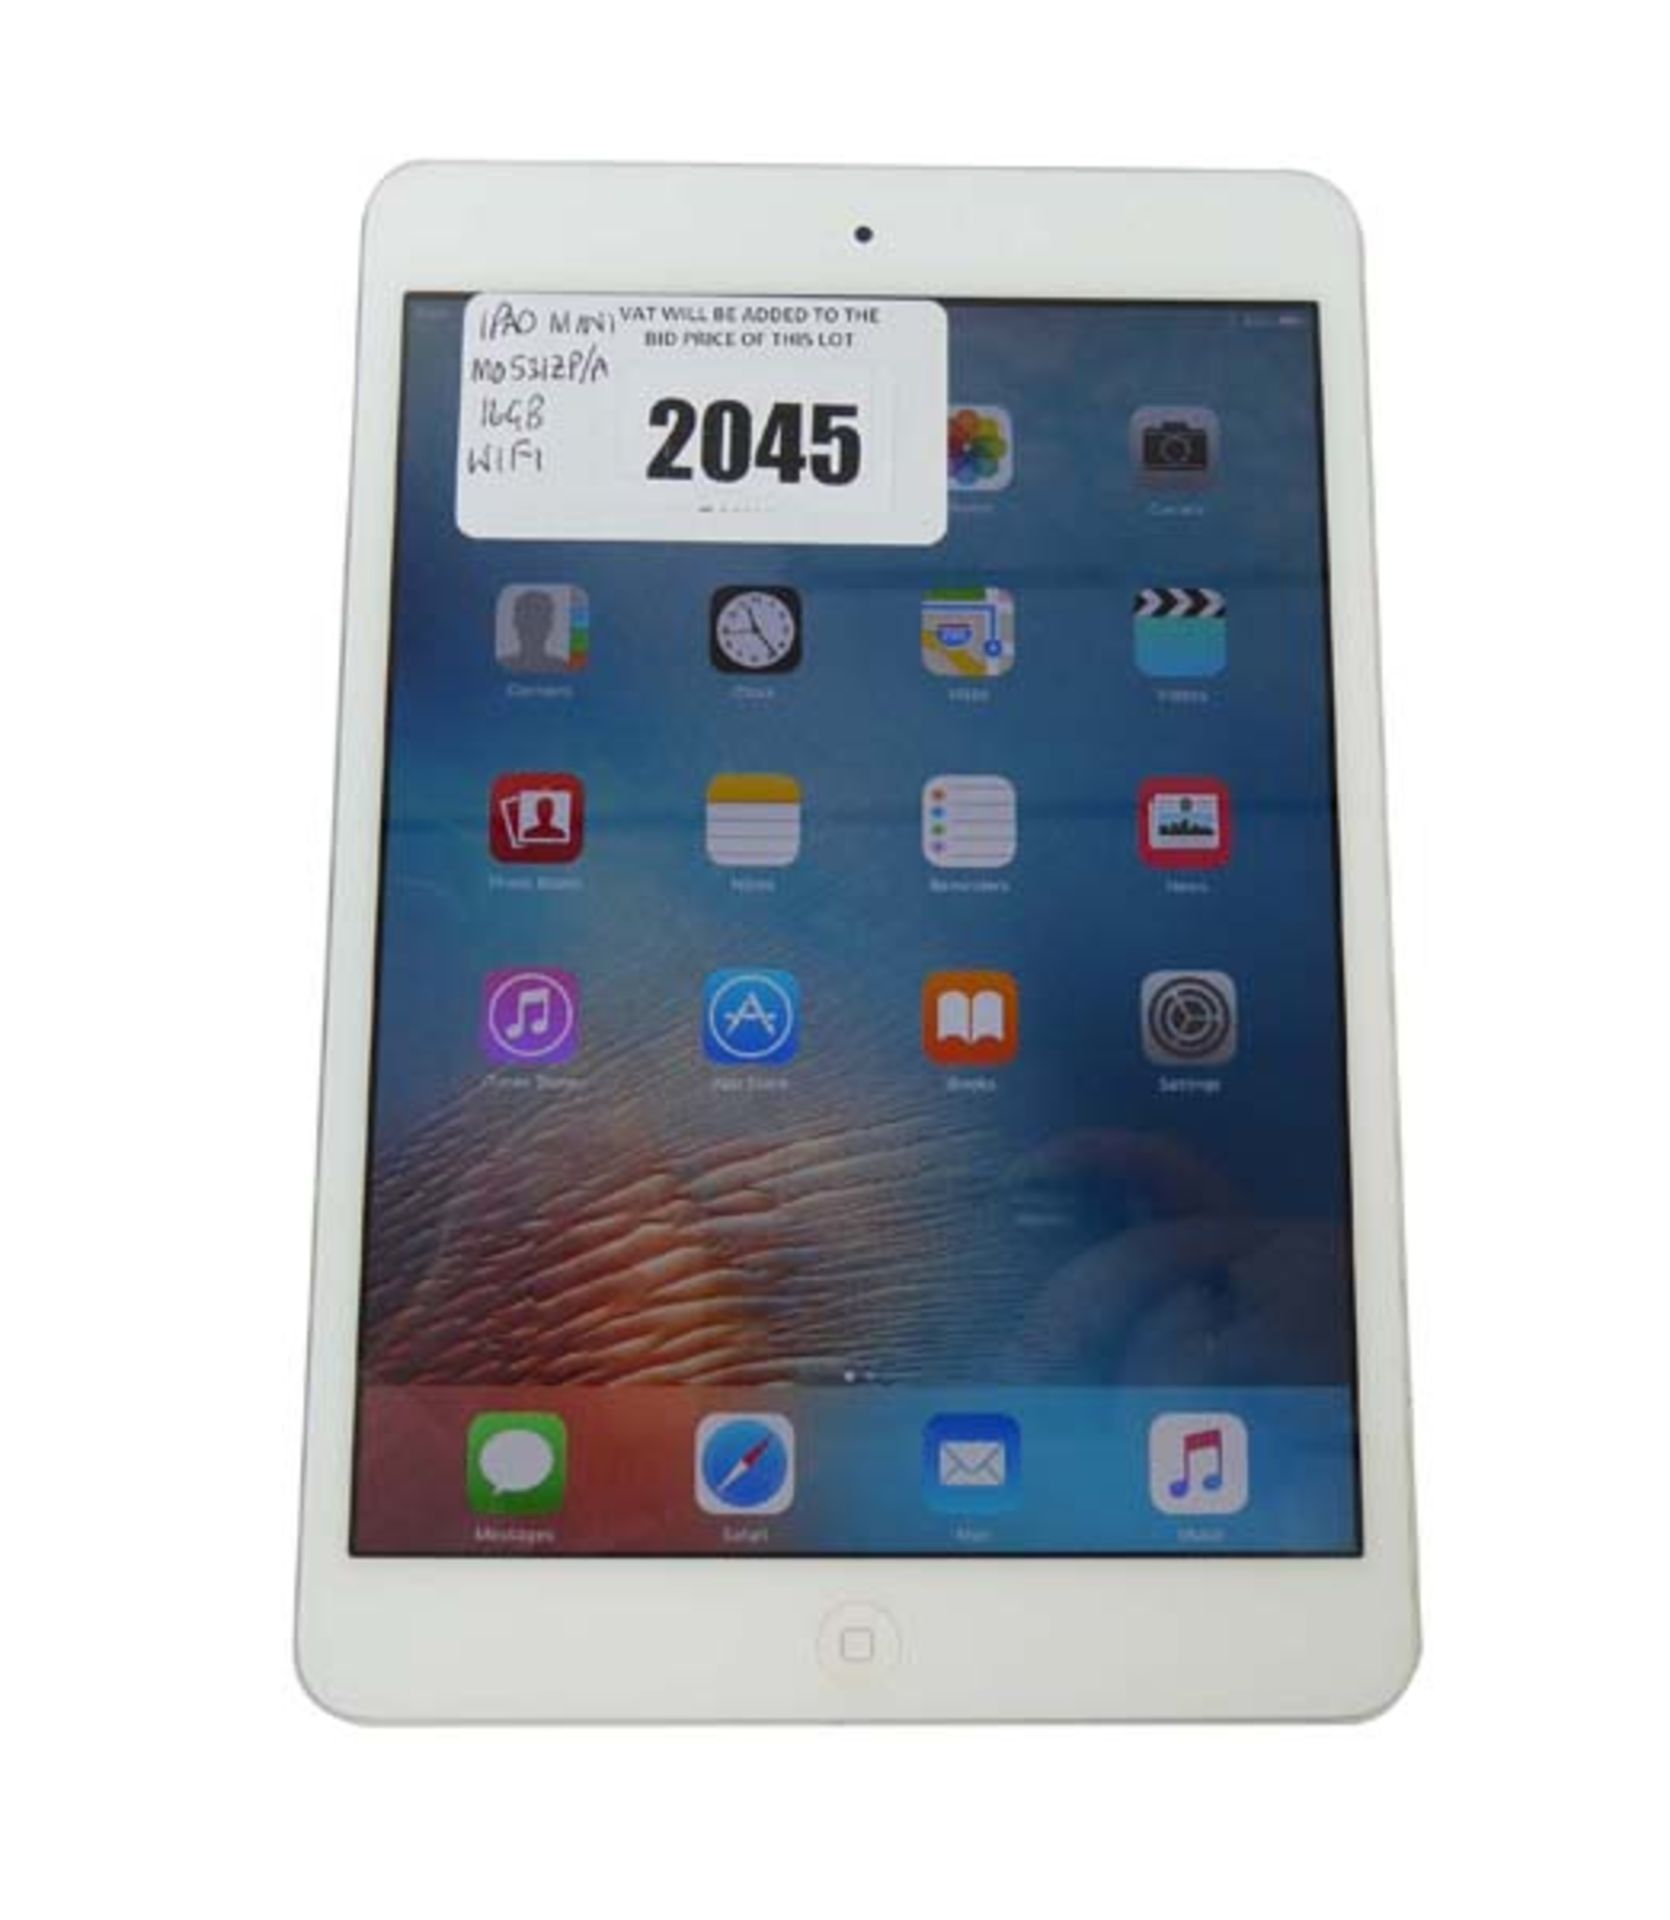 iPad Mini 16GB Silver tablet (A1432)